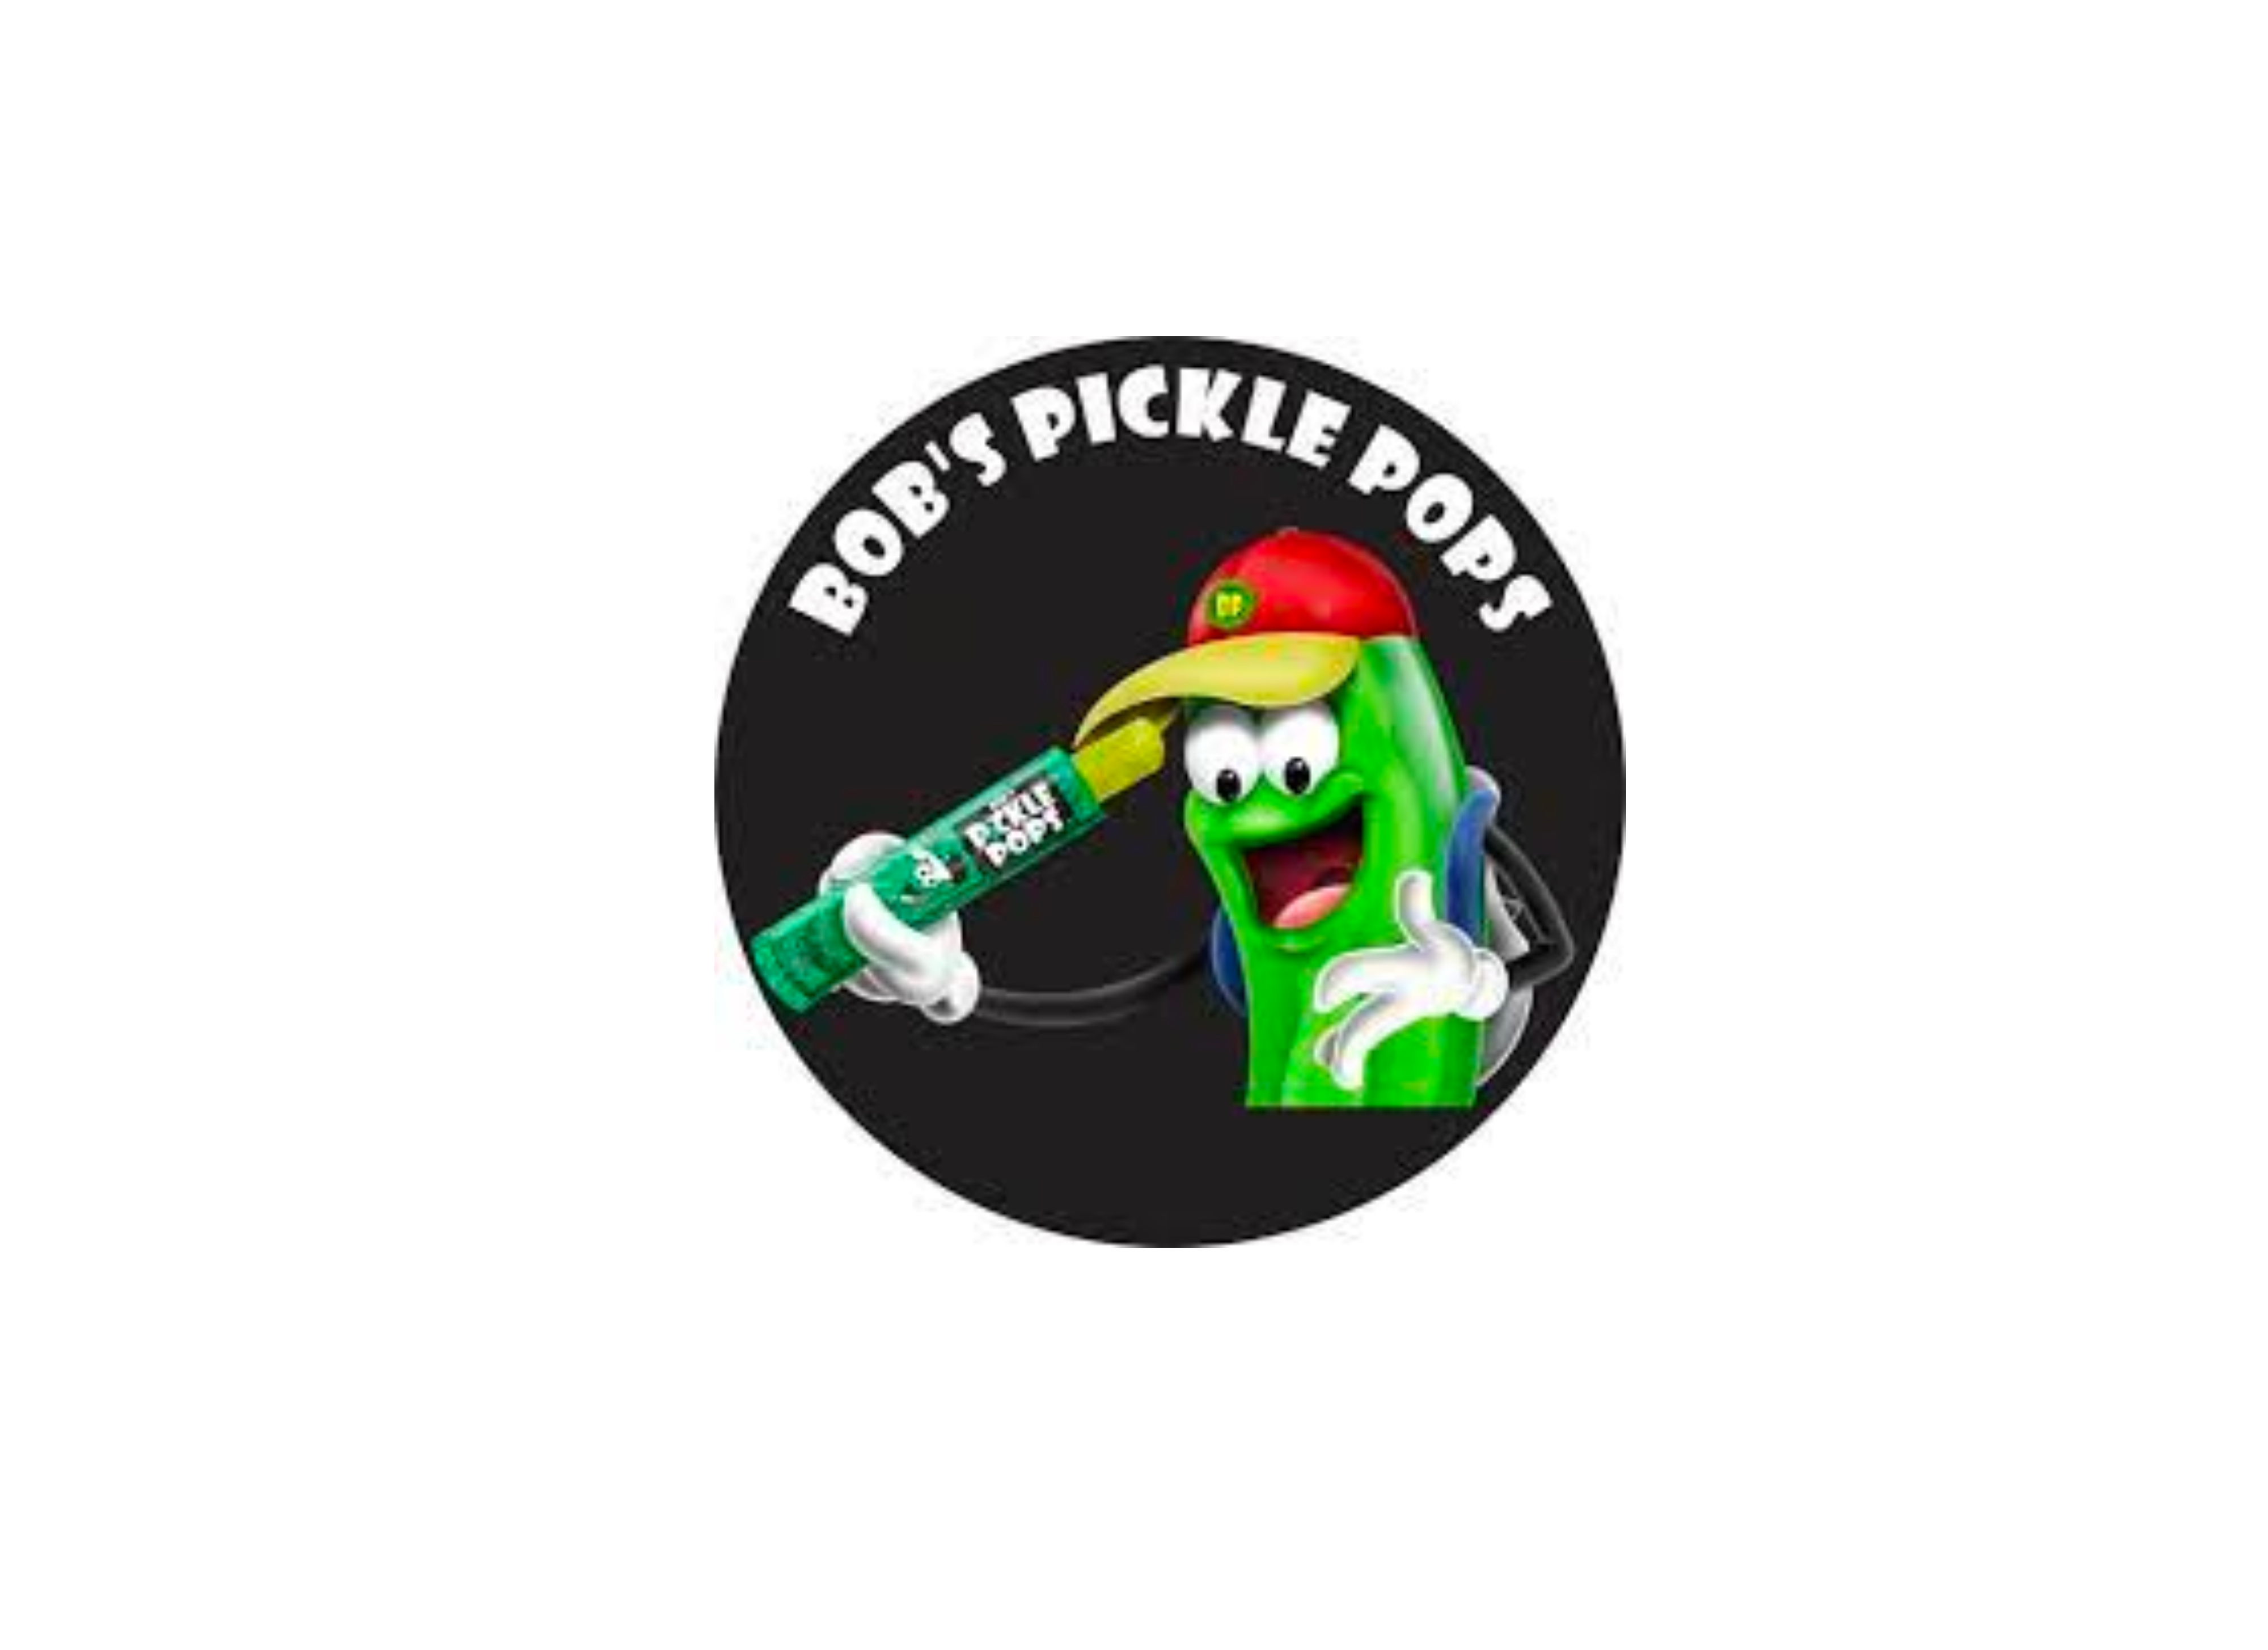 Bob's Pickle Pops